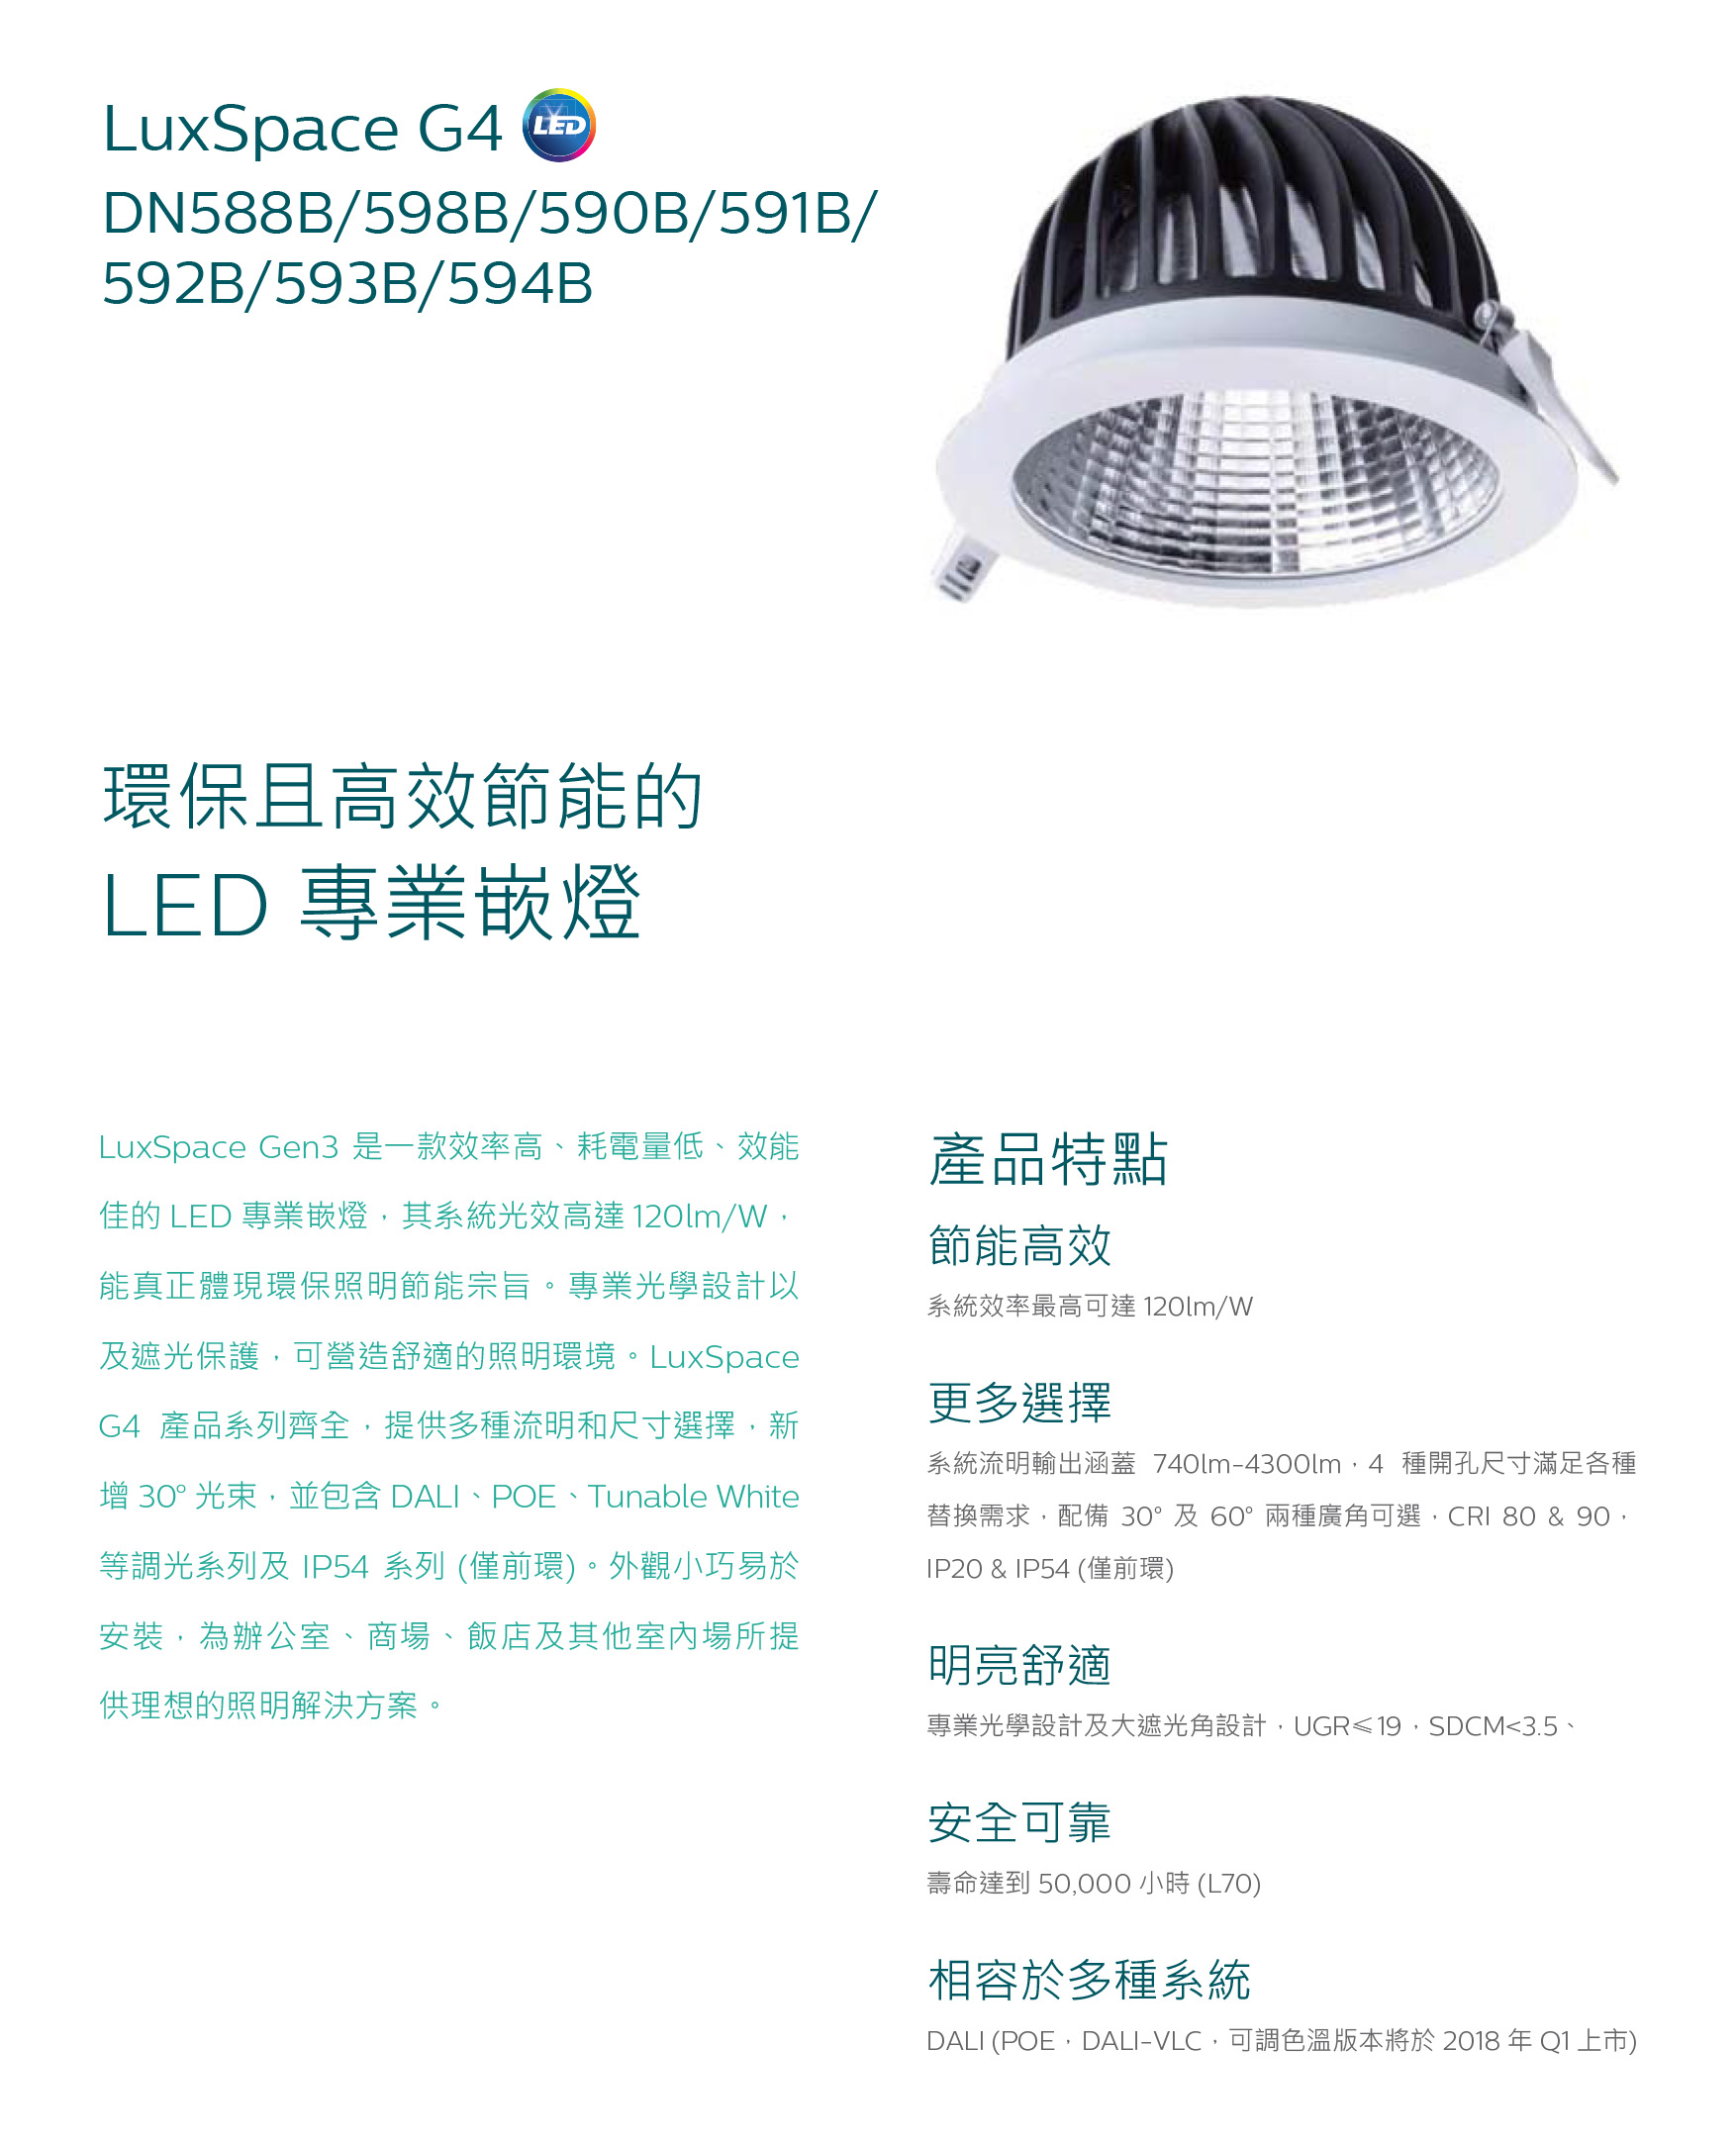 lighting philips DN588B/598B/591B/592B/593B/594B 環保且高效節能的LED專業崁燈